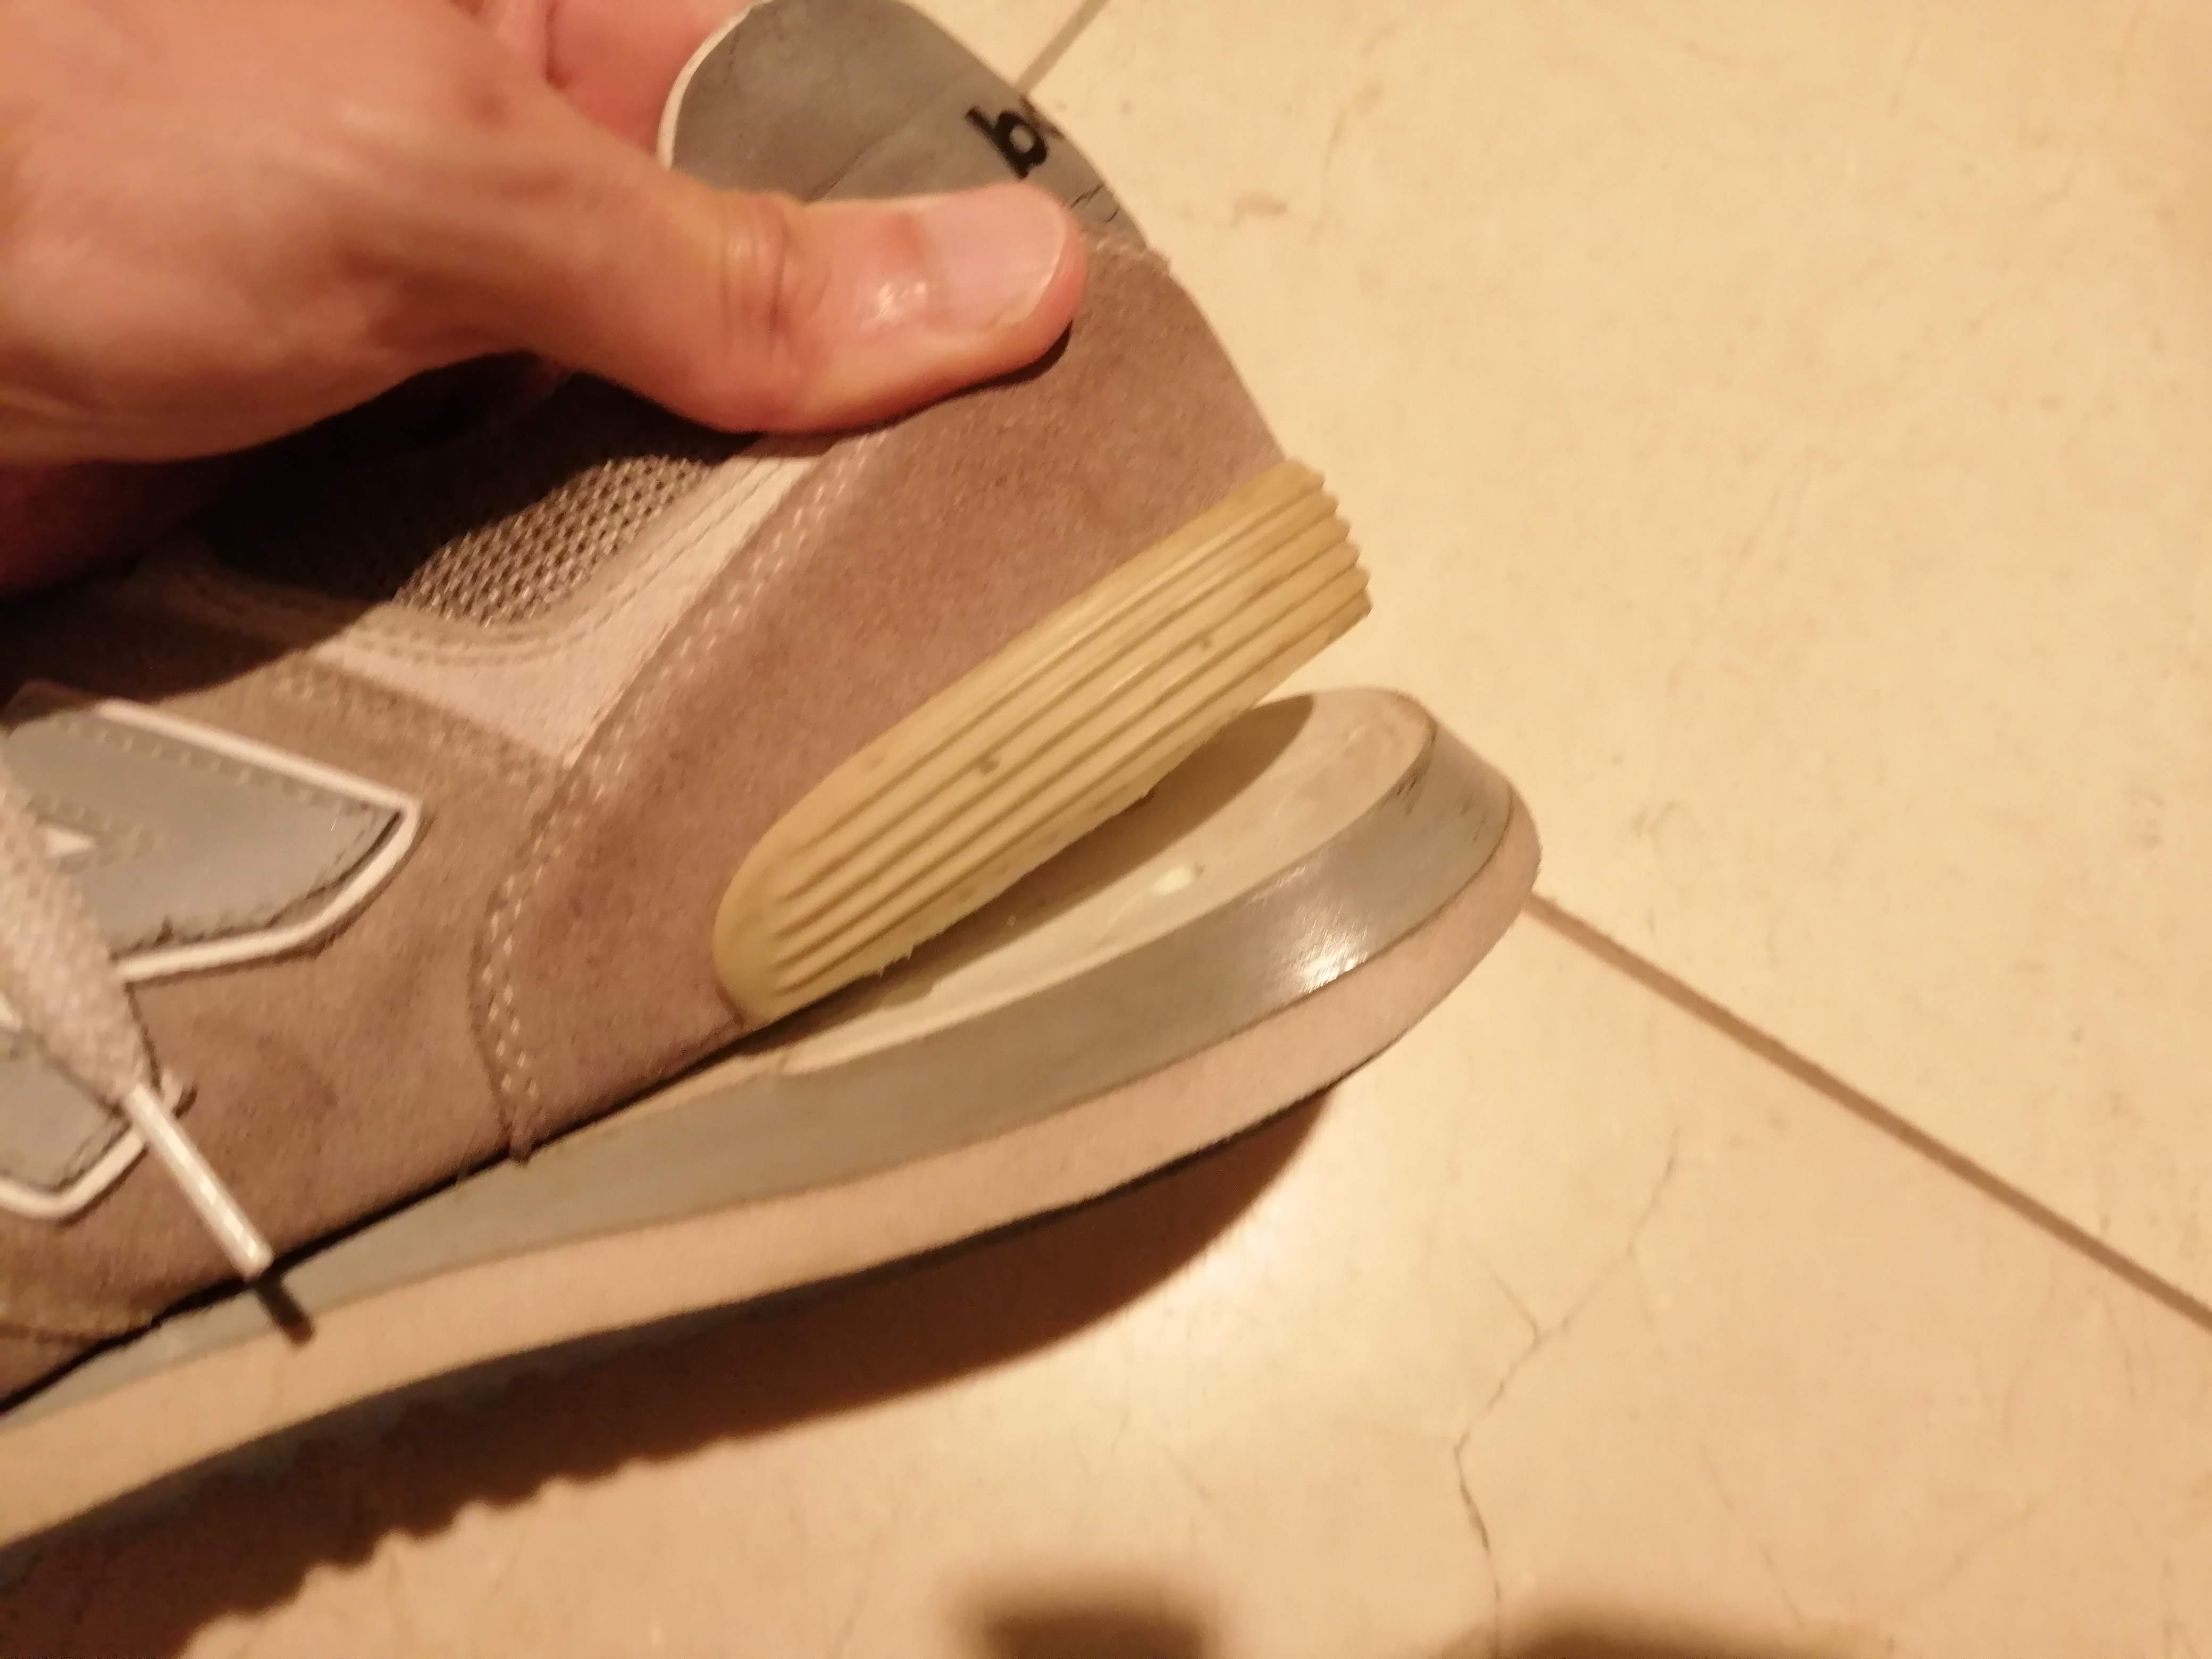 １００均検証 ダイソーの 靴底補修ボンド でスニーカーのソールのはがれを修理してみた